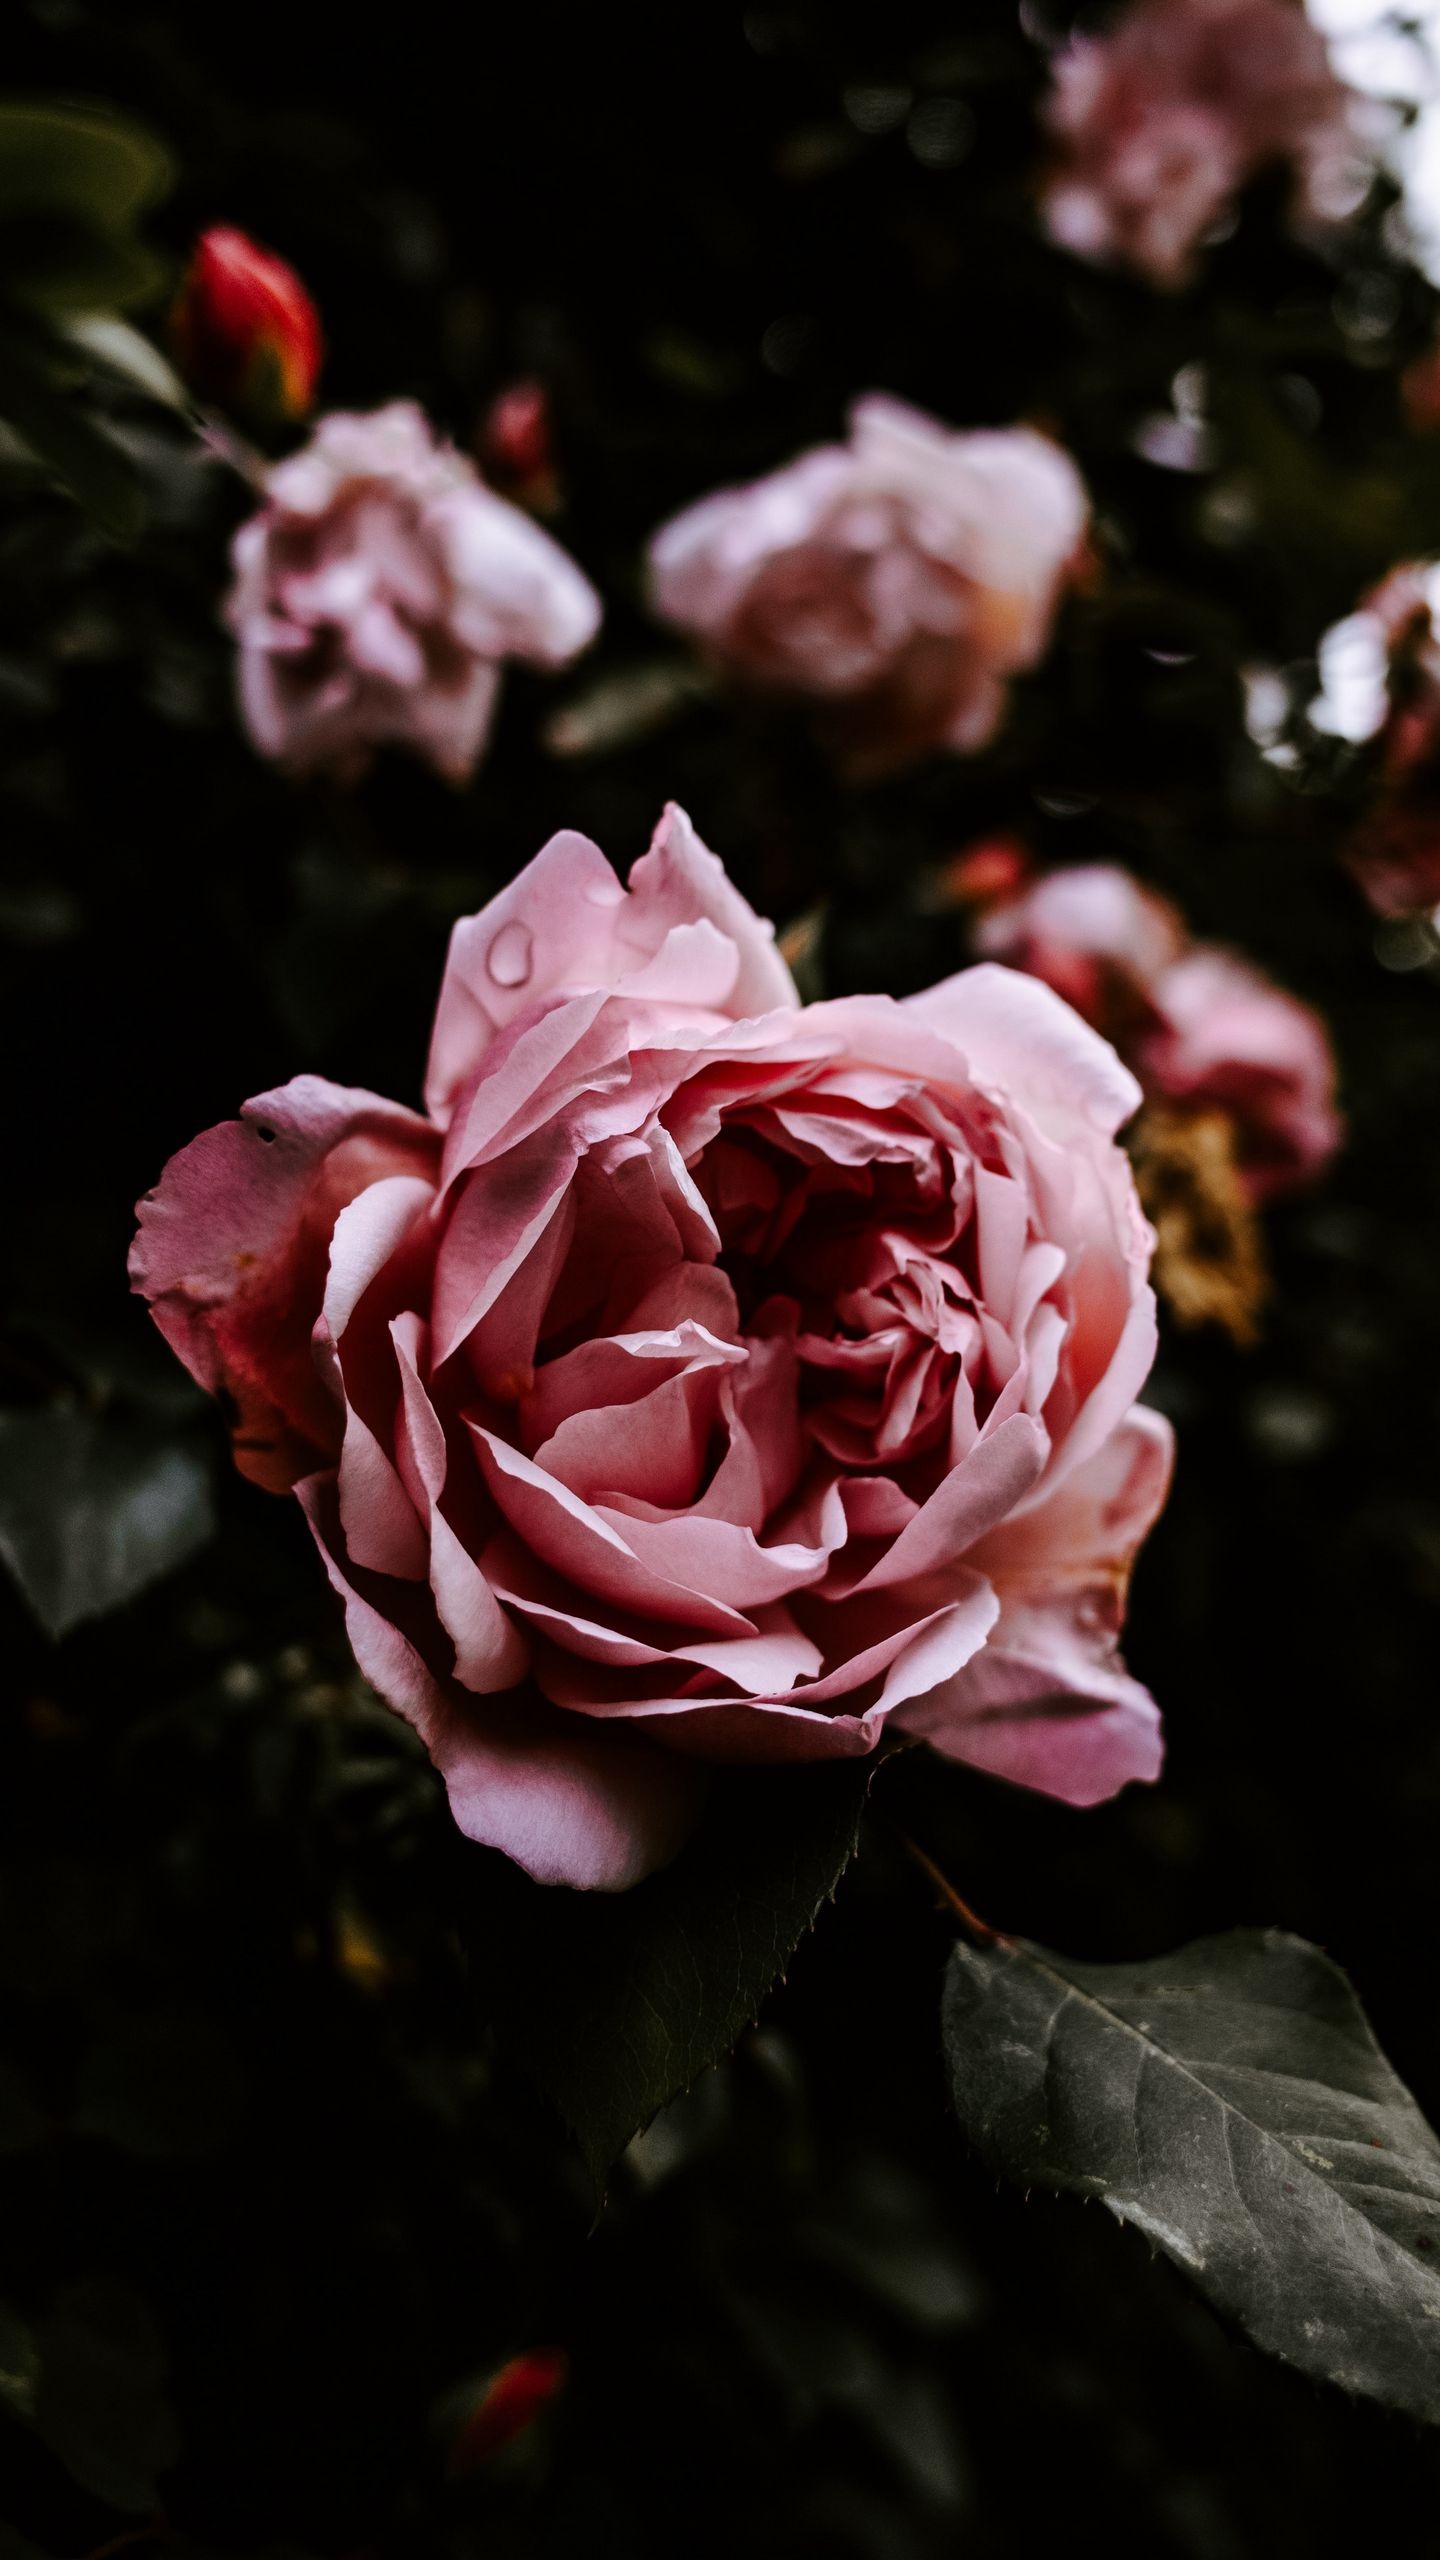 Обои на телефон роза, цветок, розовый, мокрый, крупный план - скачать  бесплатно в высоком качестве из категории Цветы